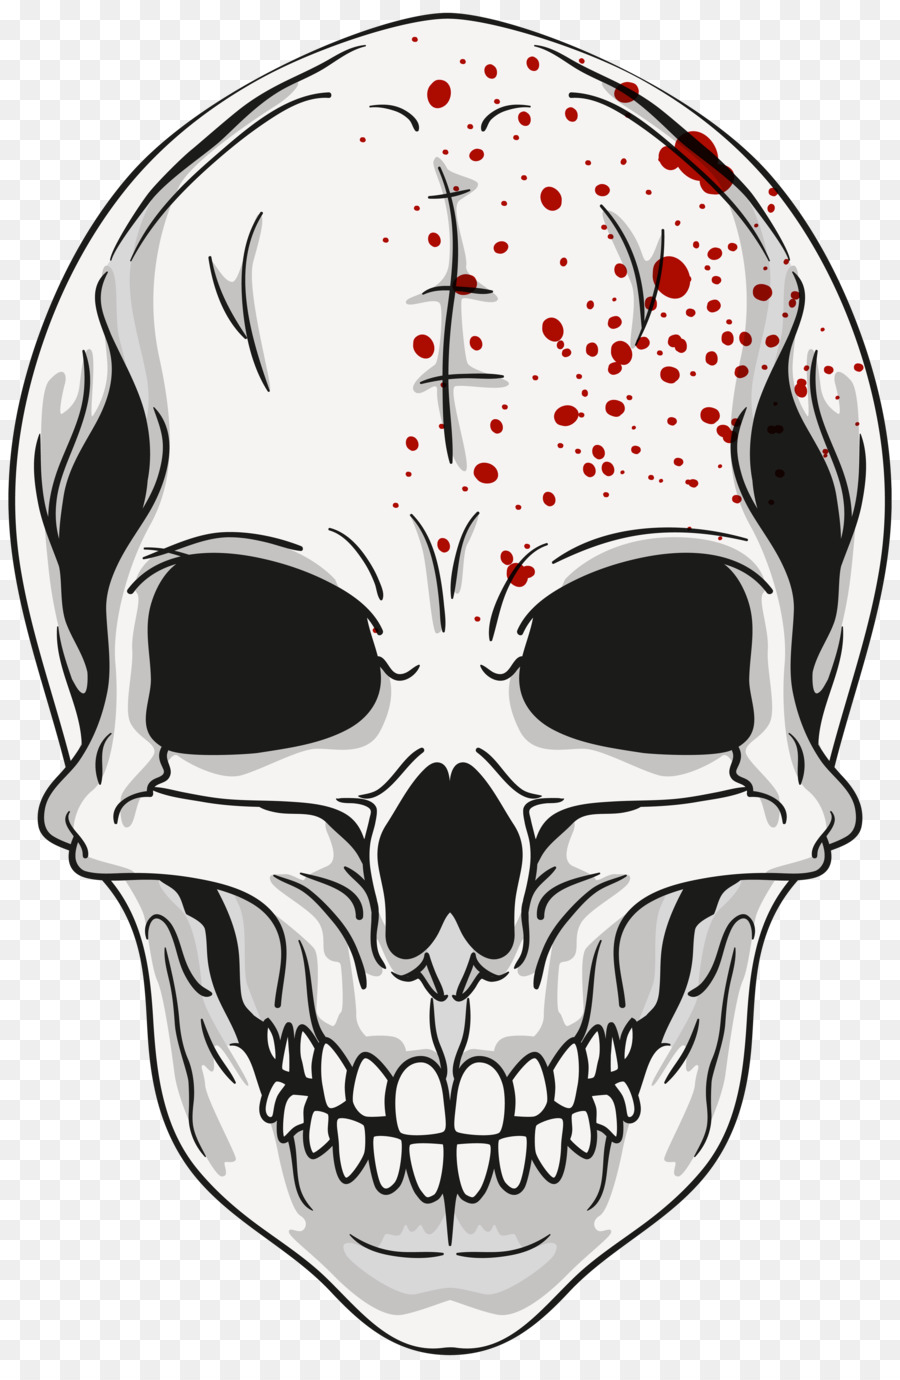 Calavera Skull Clip art - skull png download - 5263*8000 - Free Transparent Calavera png Download.